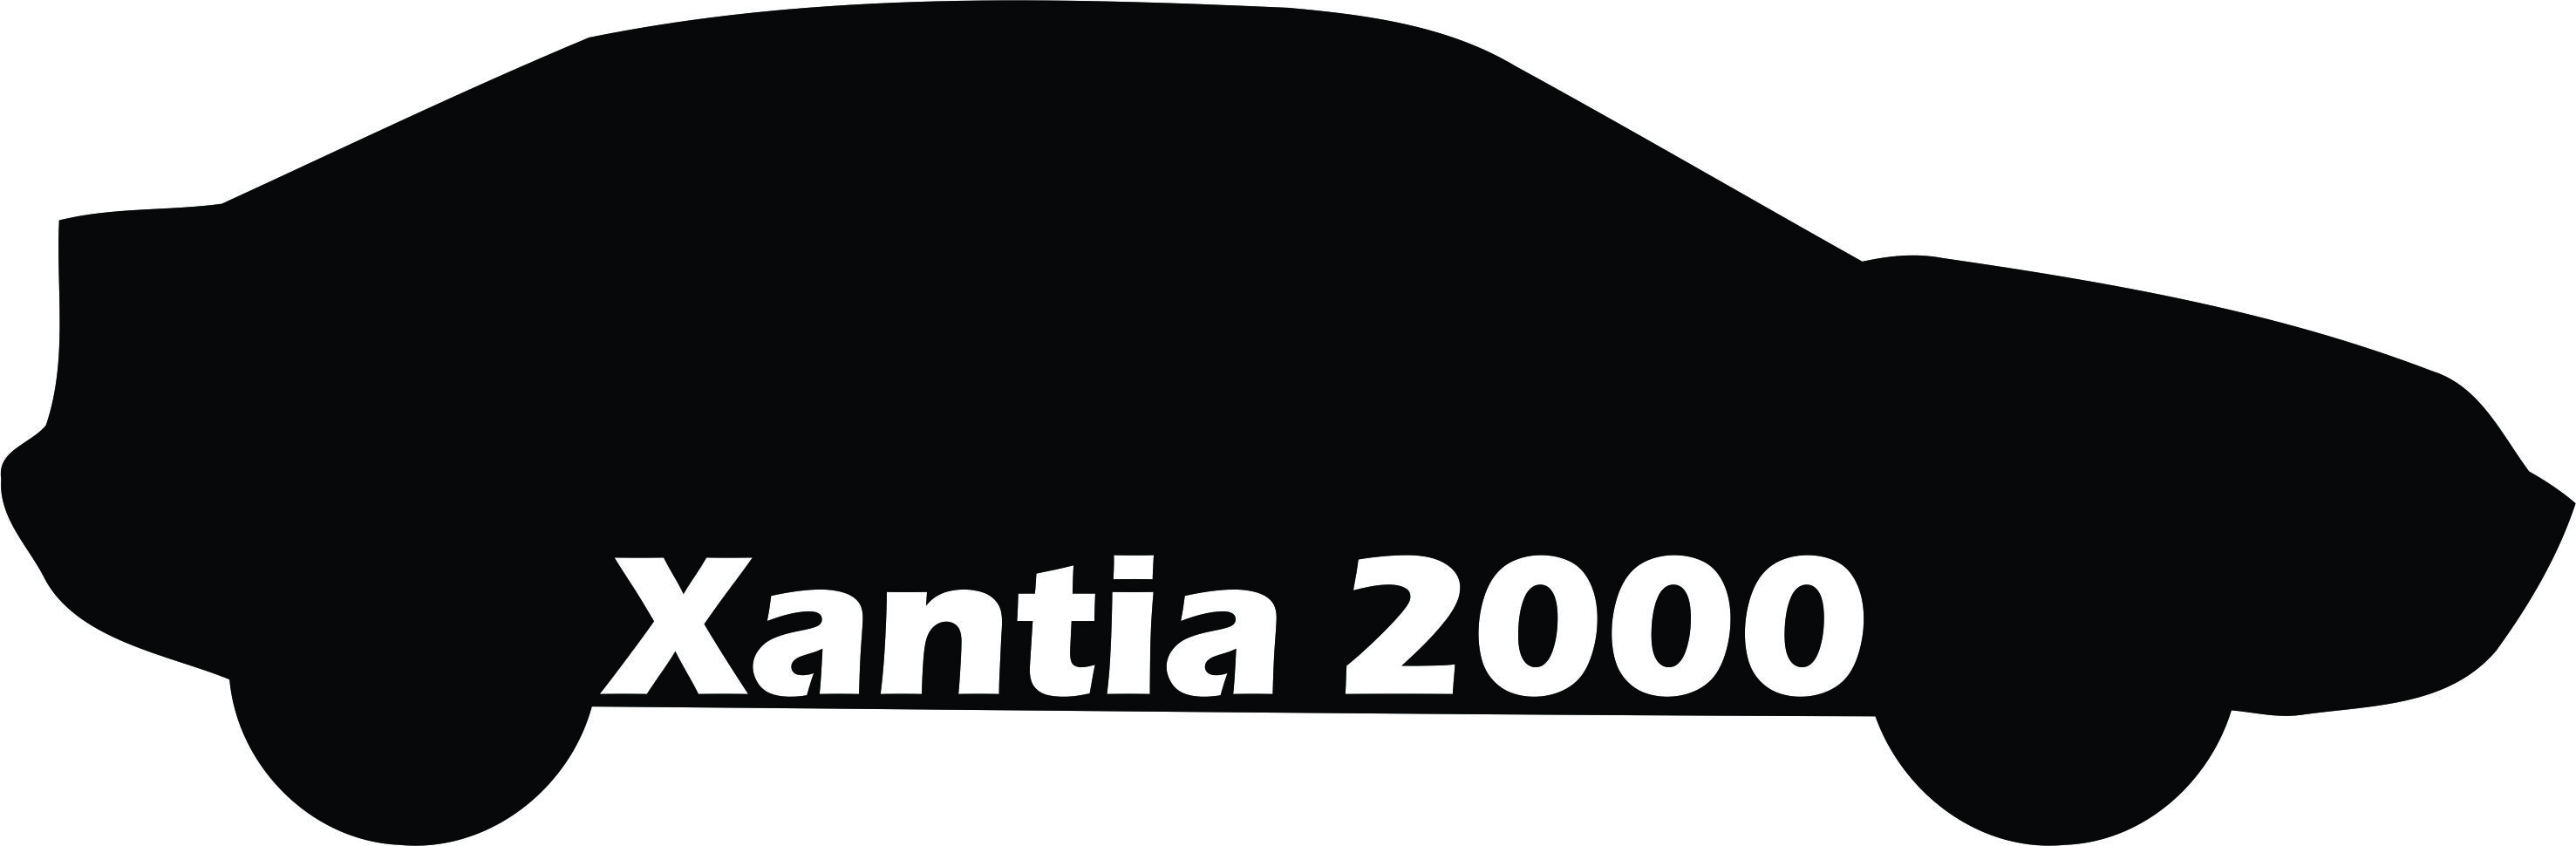 برچسب خودرو مدل زانتیا 2000